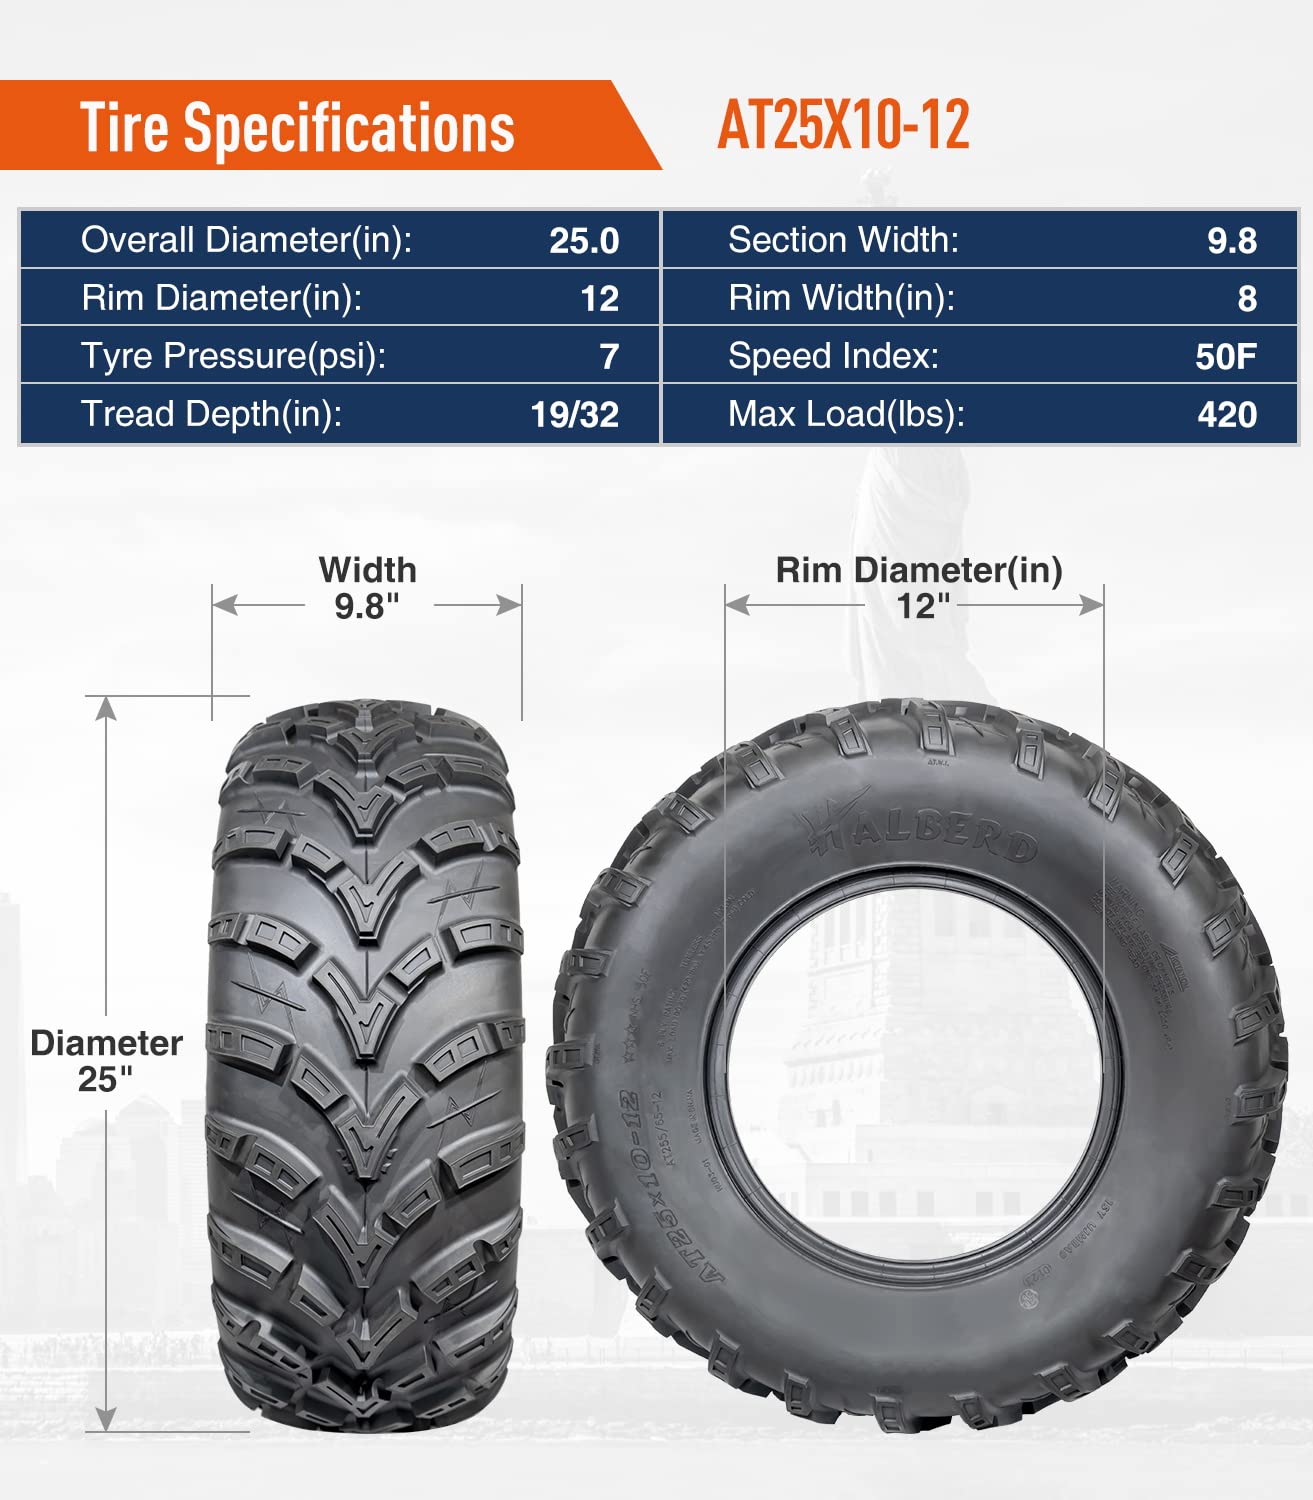 Halberd HU03 6PR ATV/UTV Tires 25x8-12 Front & 25x10-12 Rear